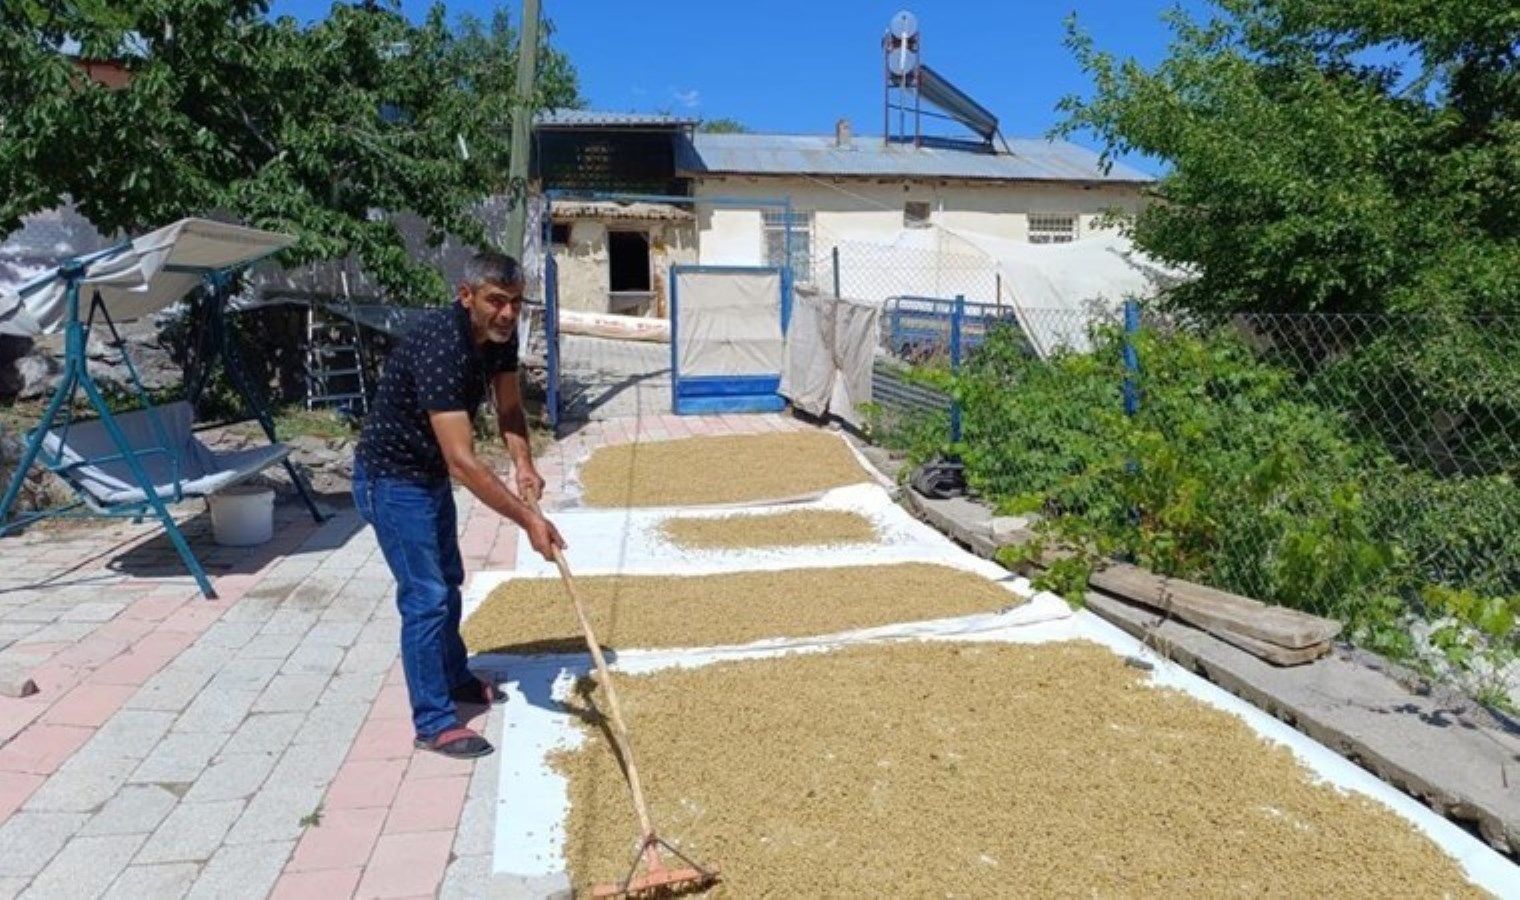 Tunceli’nin köyünden çıkıp dünyaya ihraç ediliyor: Yüzde 70’i dalında kuruyor…